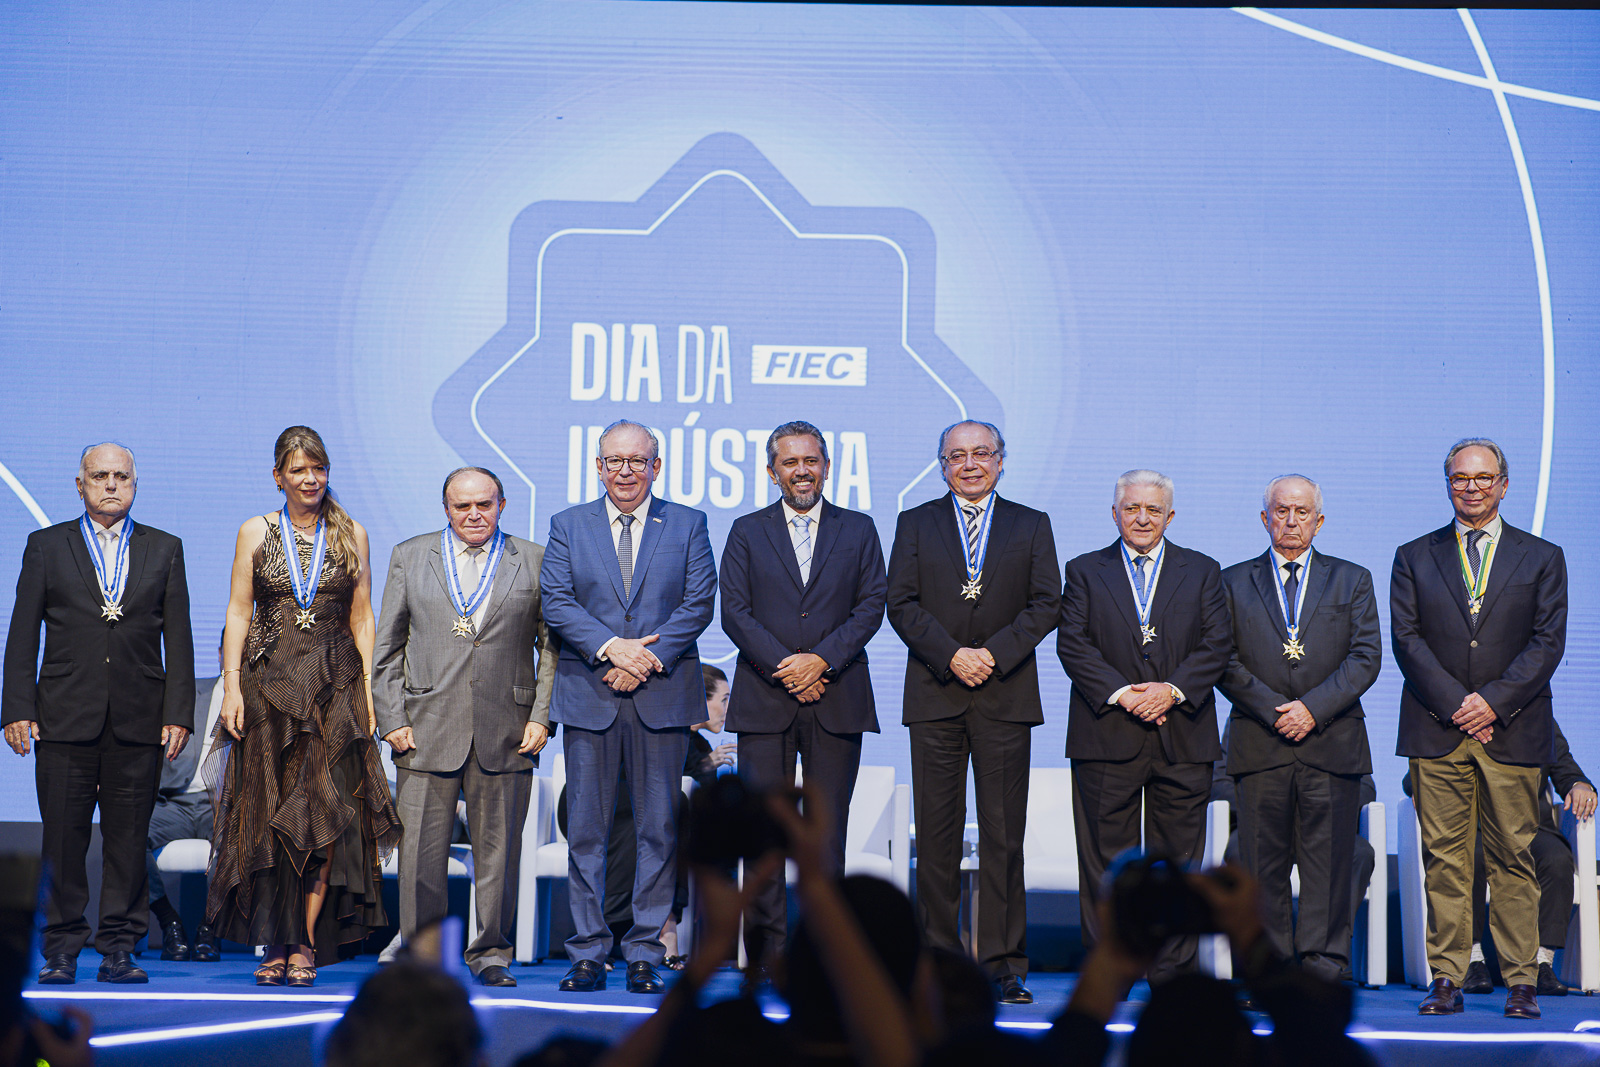 FIEC entrega Medalha do Mérito Industrial e comenda da CNI durante evento em Fortaleza